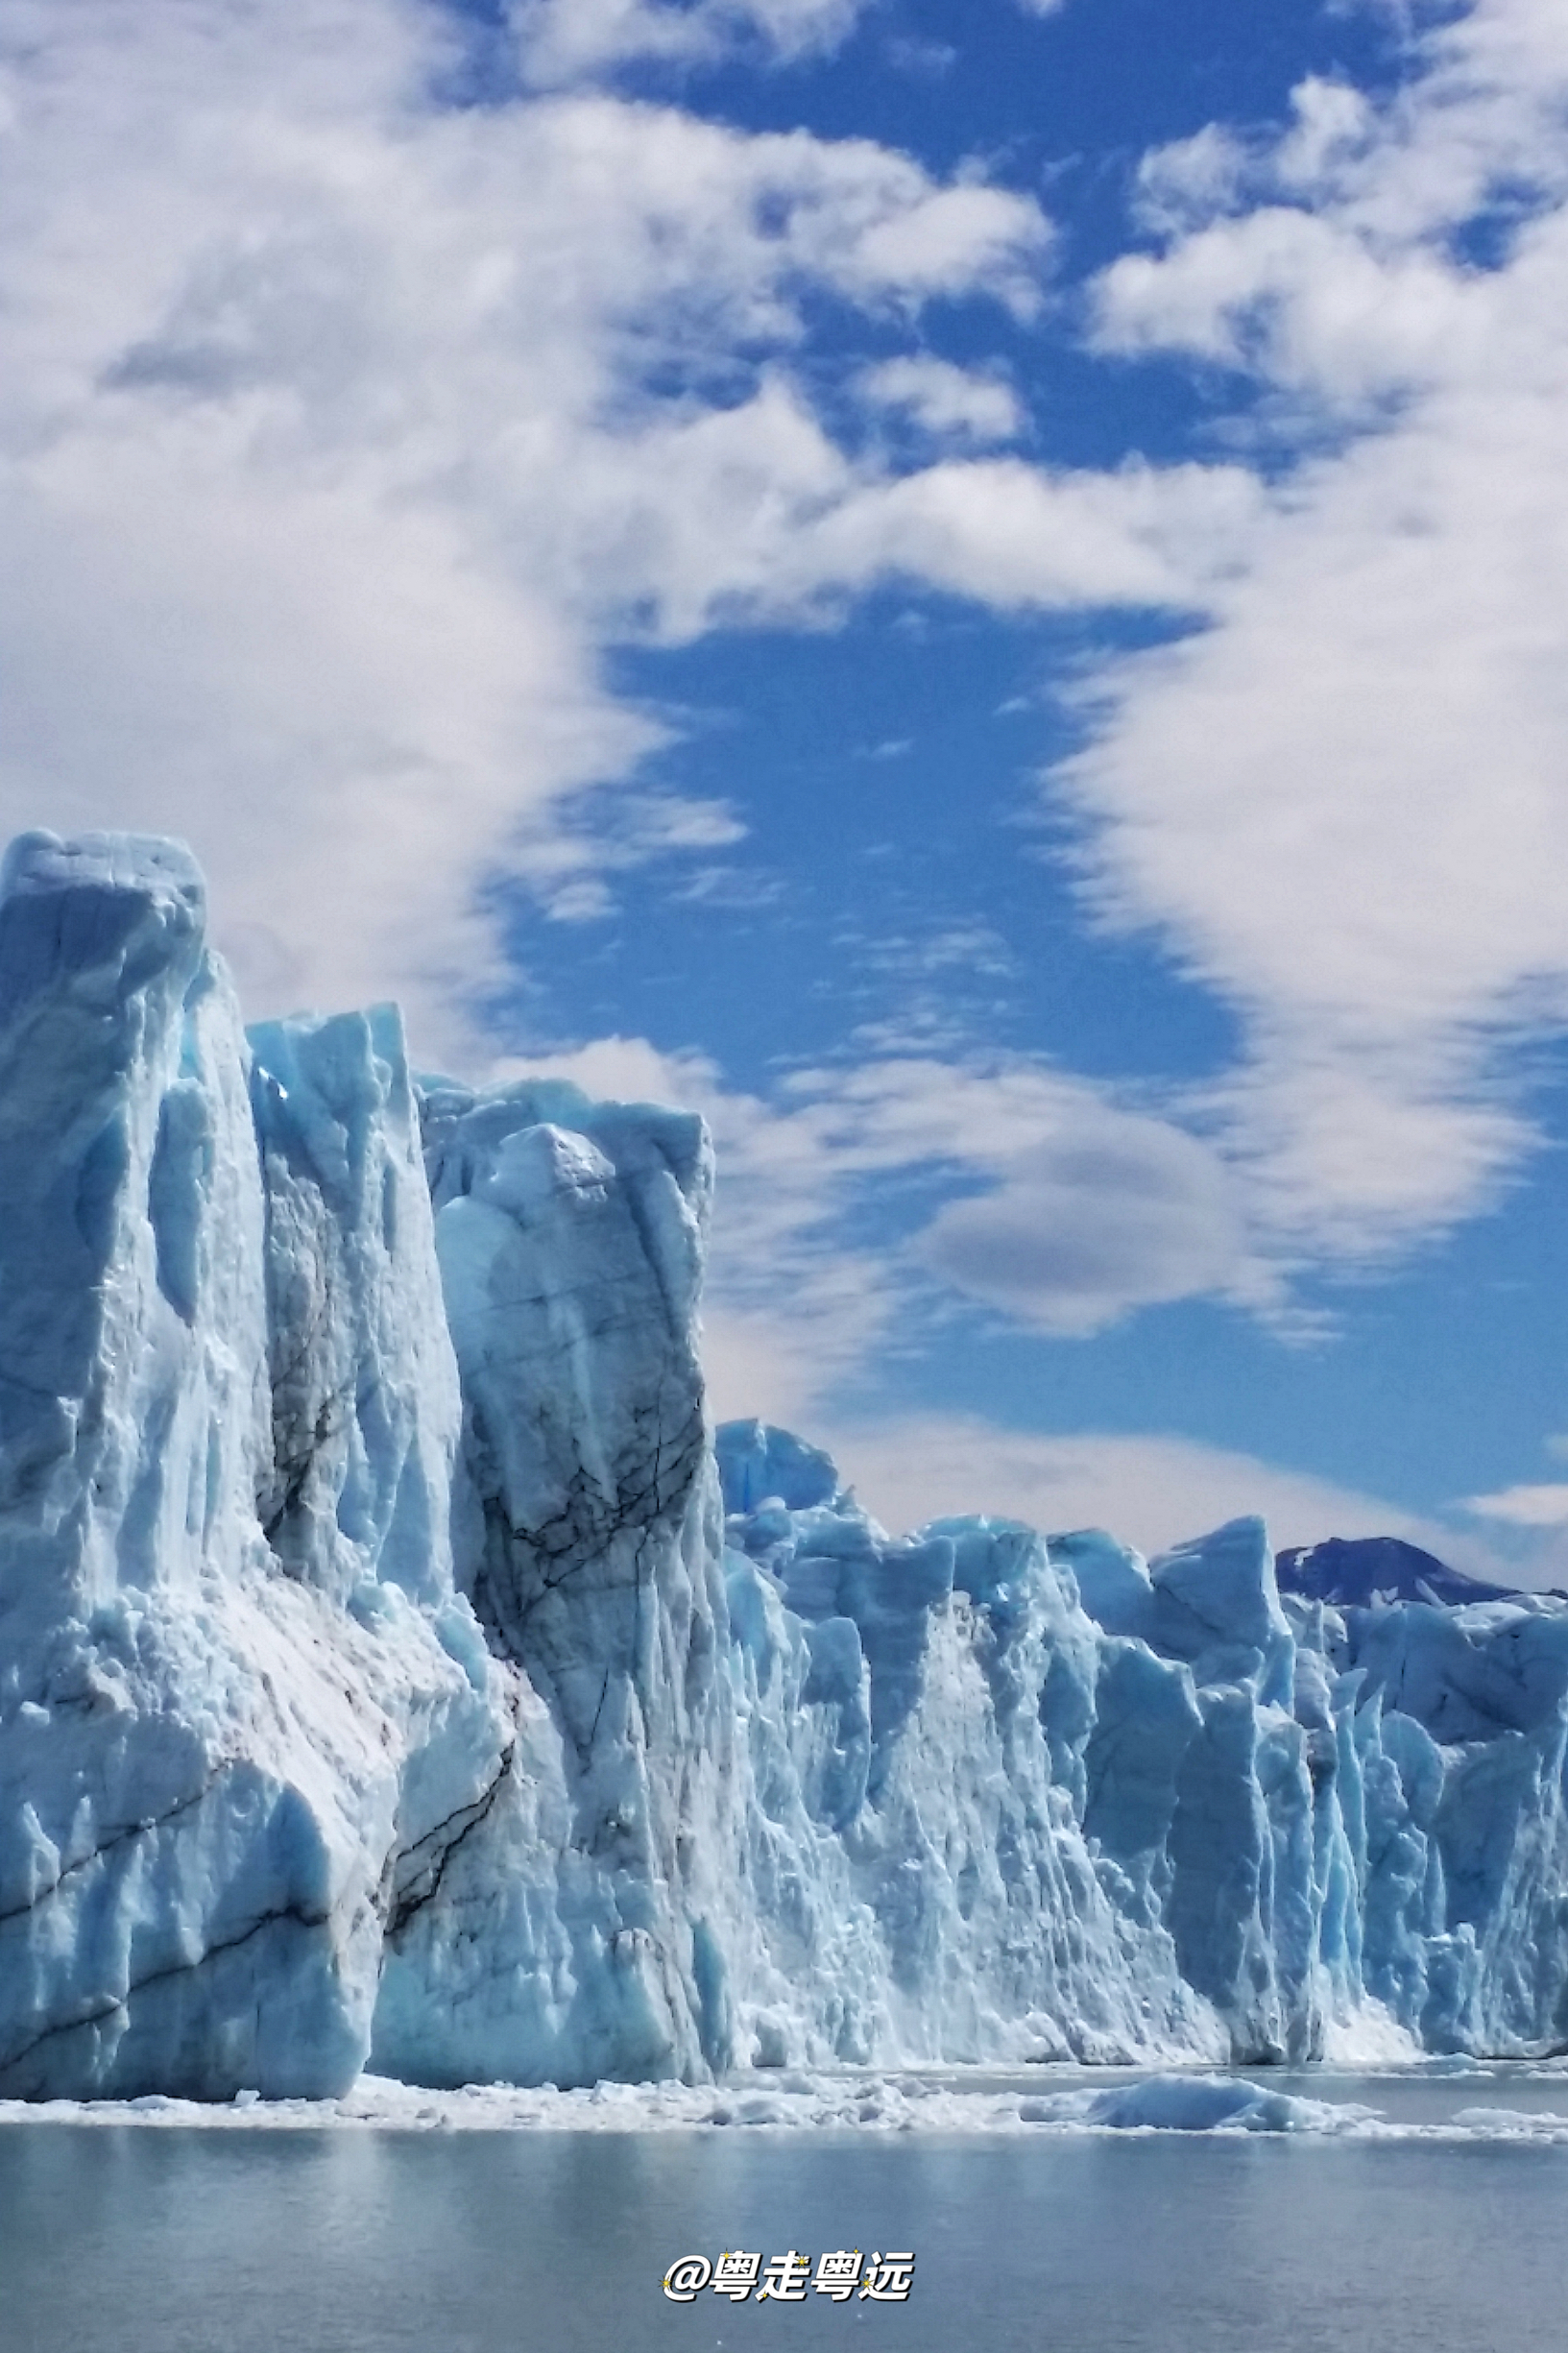 阿根廷最美旅行景点 仅次于南极的莫雷诺大冰川